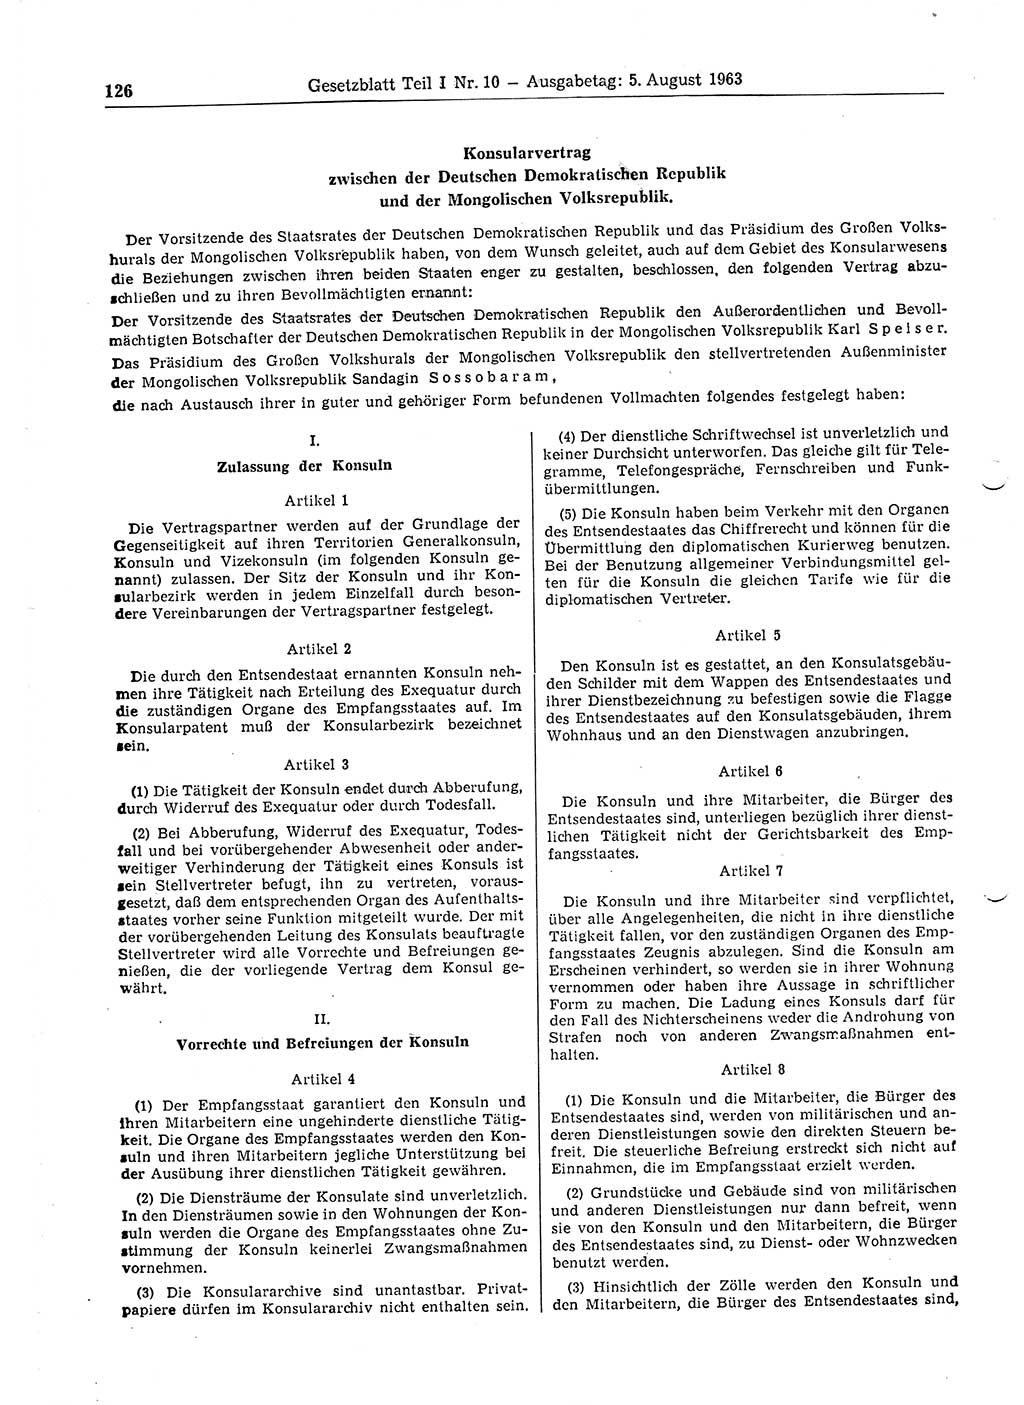 Gesetzblatt (GBl.) der Deutschen Demokratischen Republik (DDR) Teil Ⅰ 1963, Seite 126 (GBl. DDR Ⅰ 1963, S. 126)